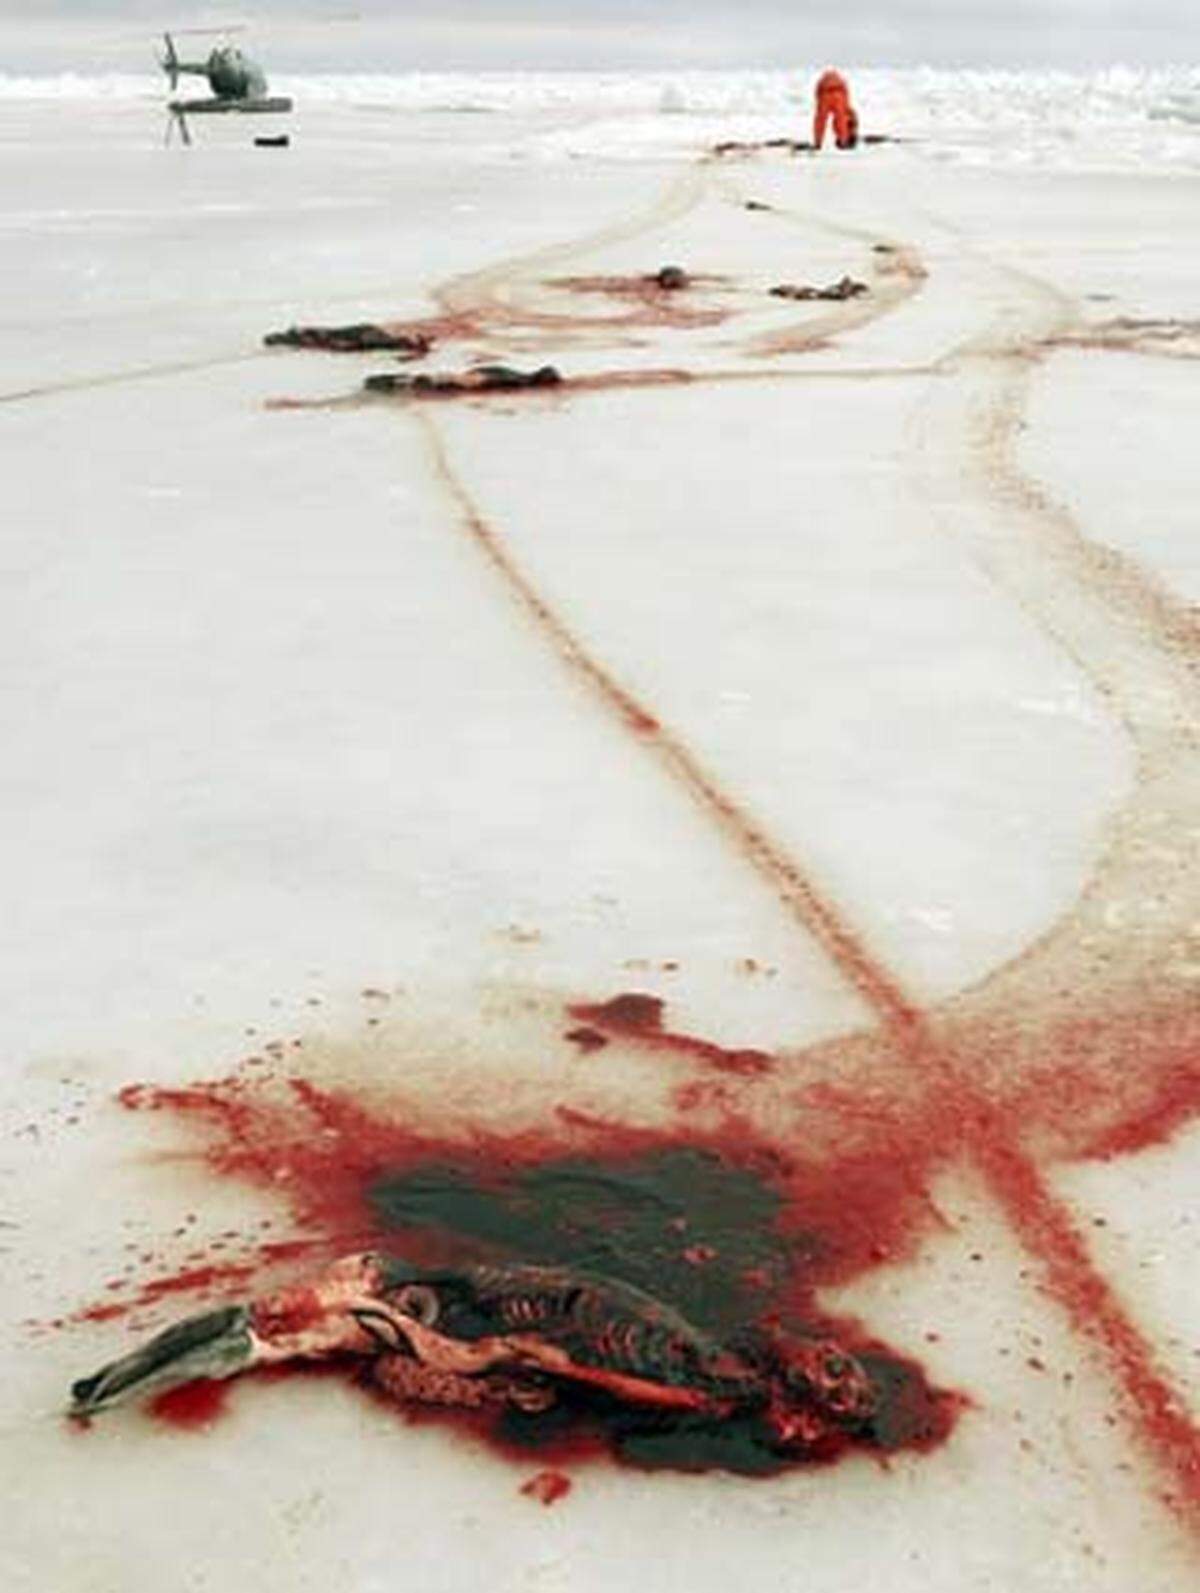 Ende Februar hatte Russland zunächst nur die Jagd auf Robbenbabys in den ersten Wochen nach der Geburt verboten.